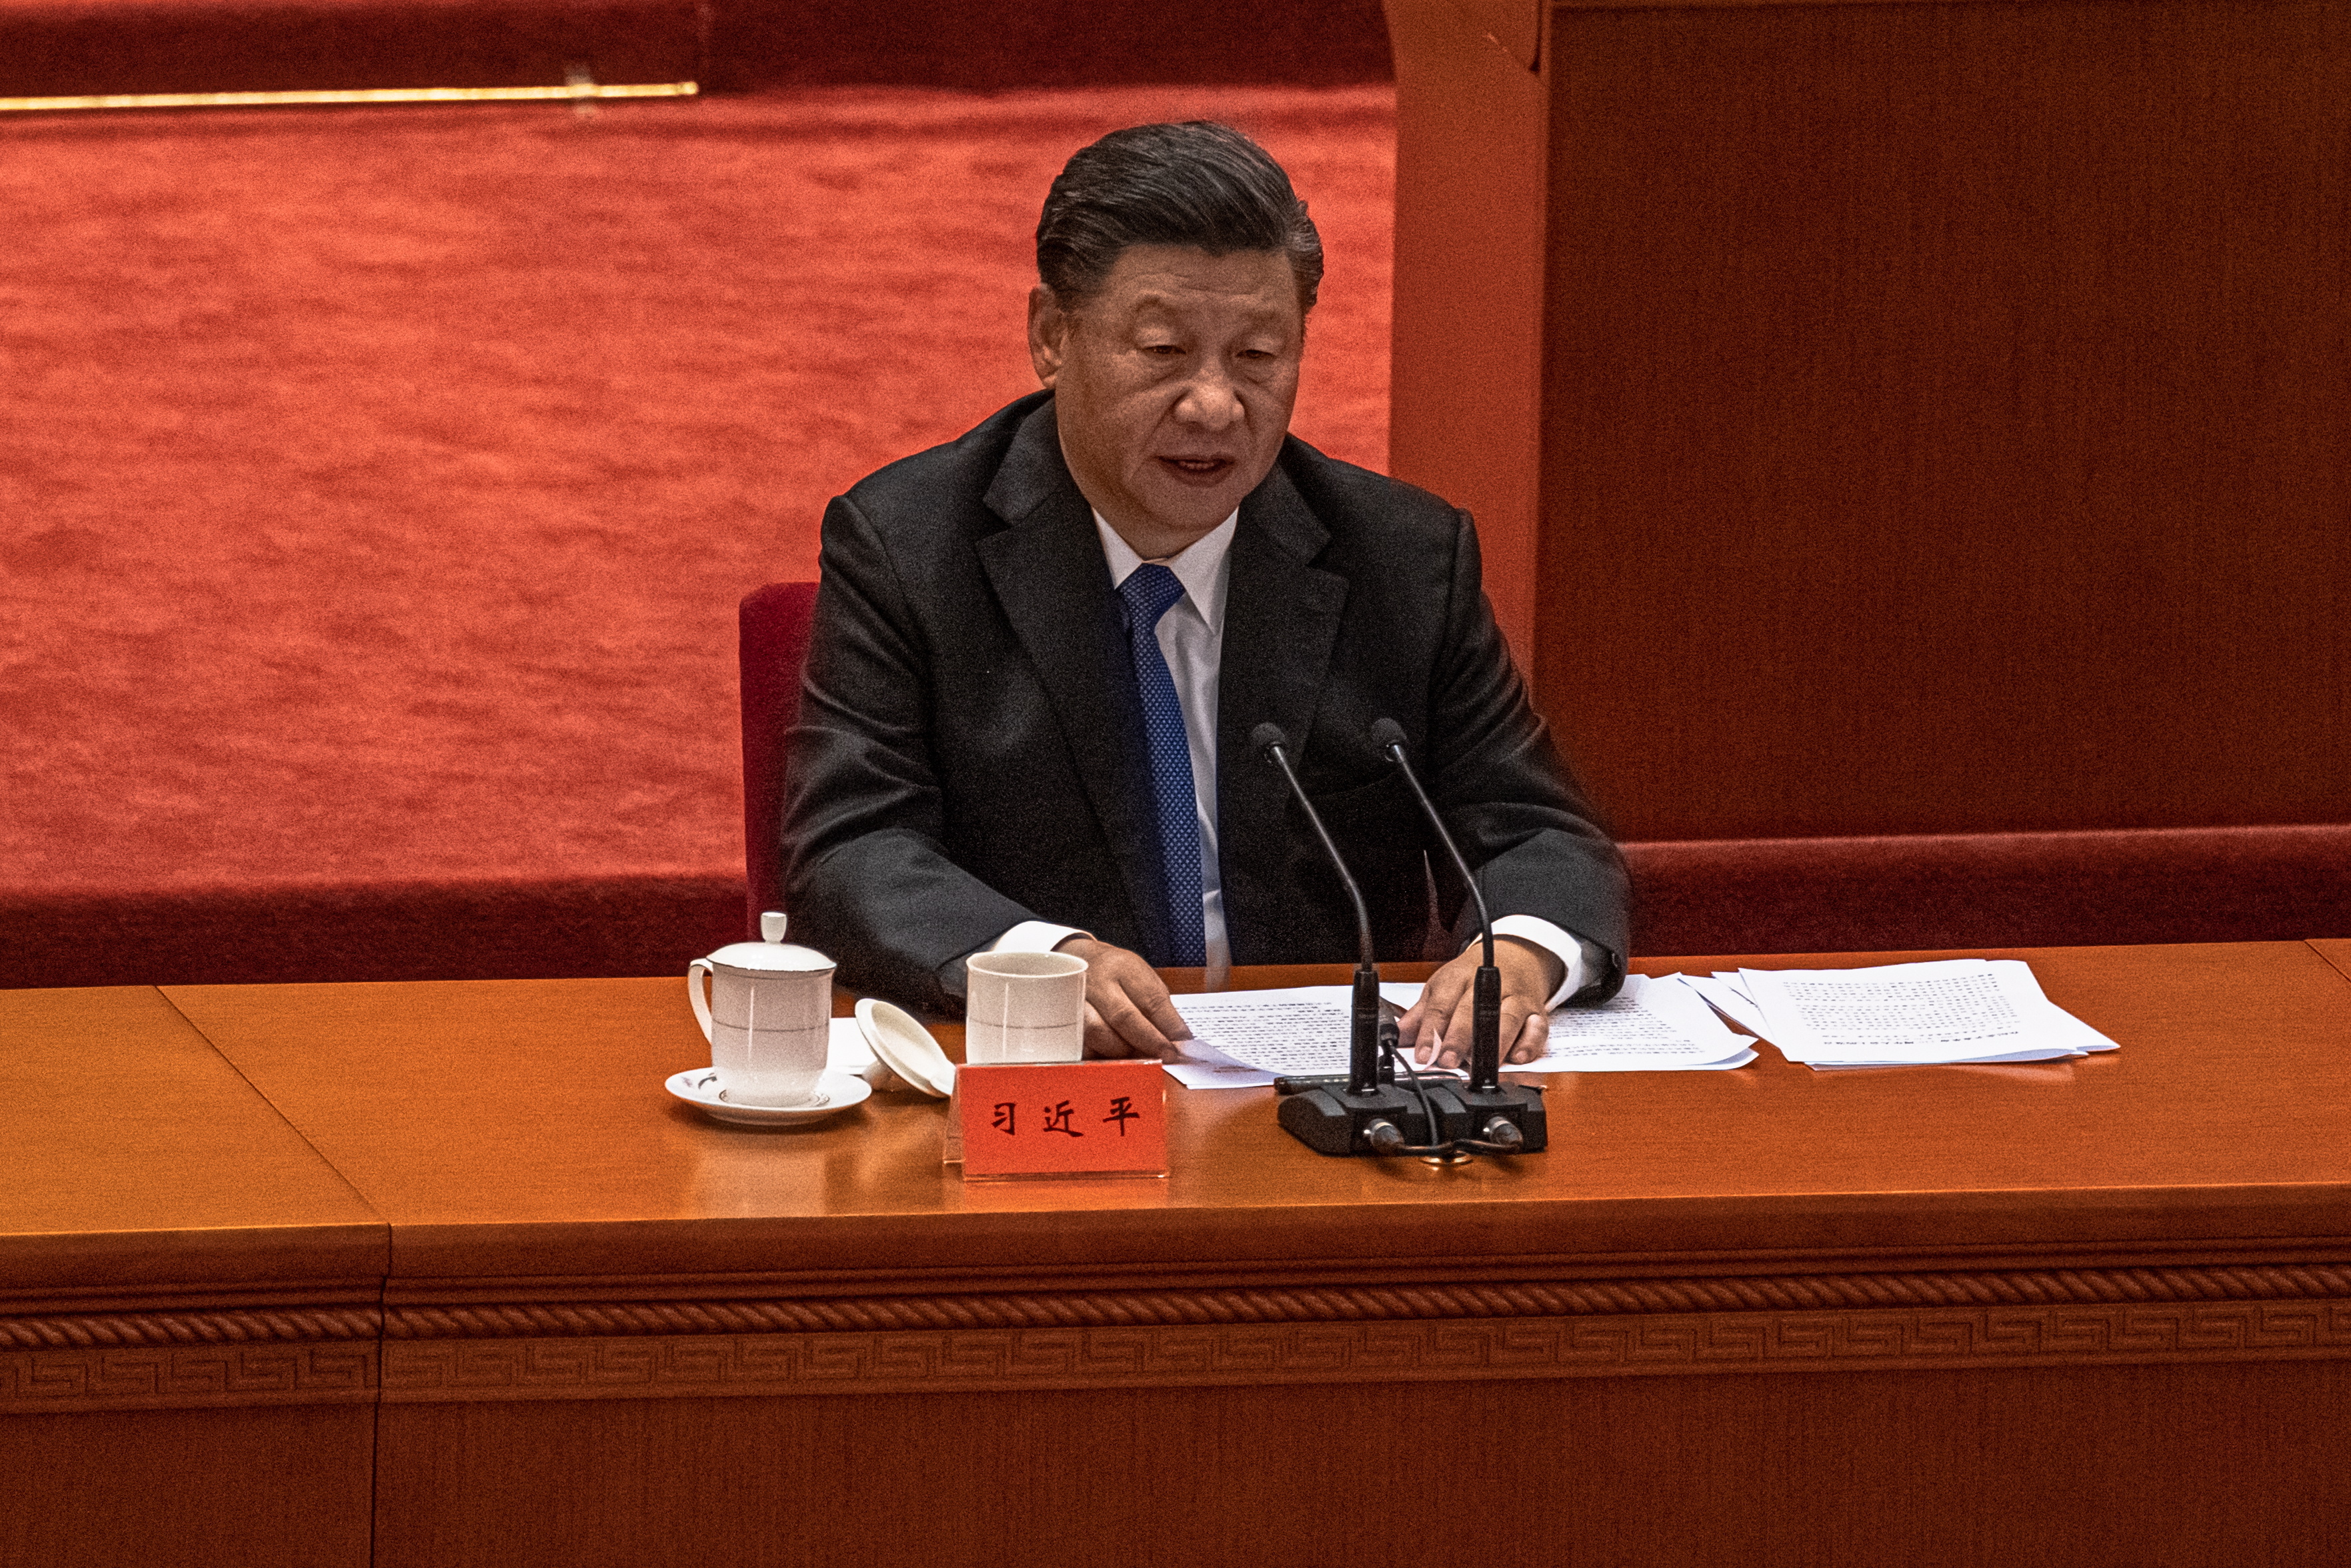 El presidente de China, Xi Jinping, en una imagen de archivo. EFE/EPA/ROMAN PILIPEY
